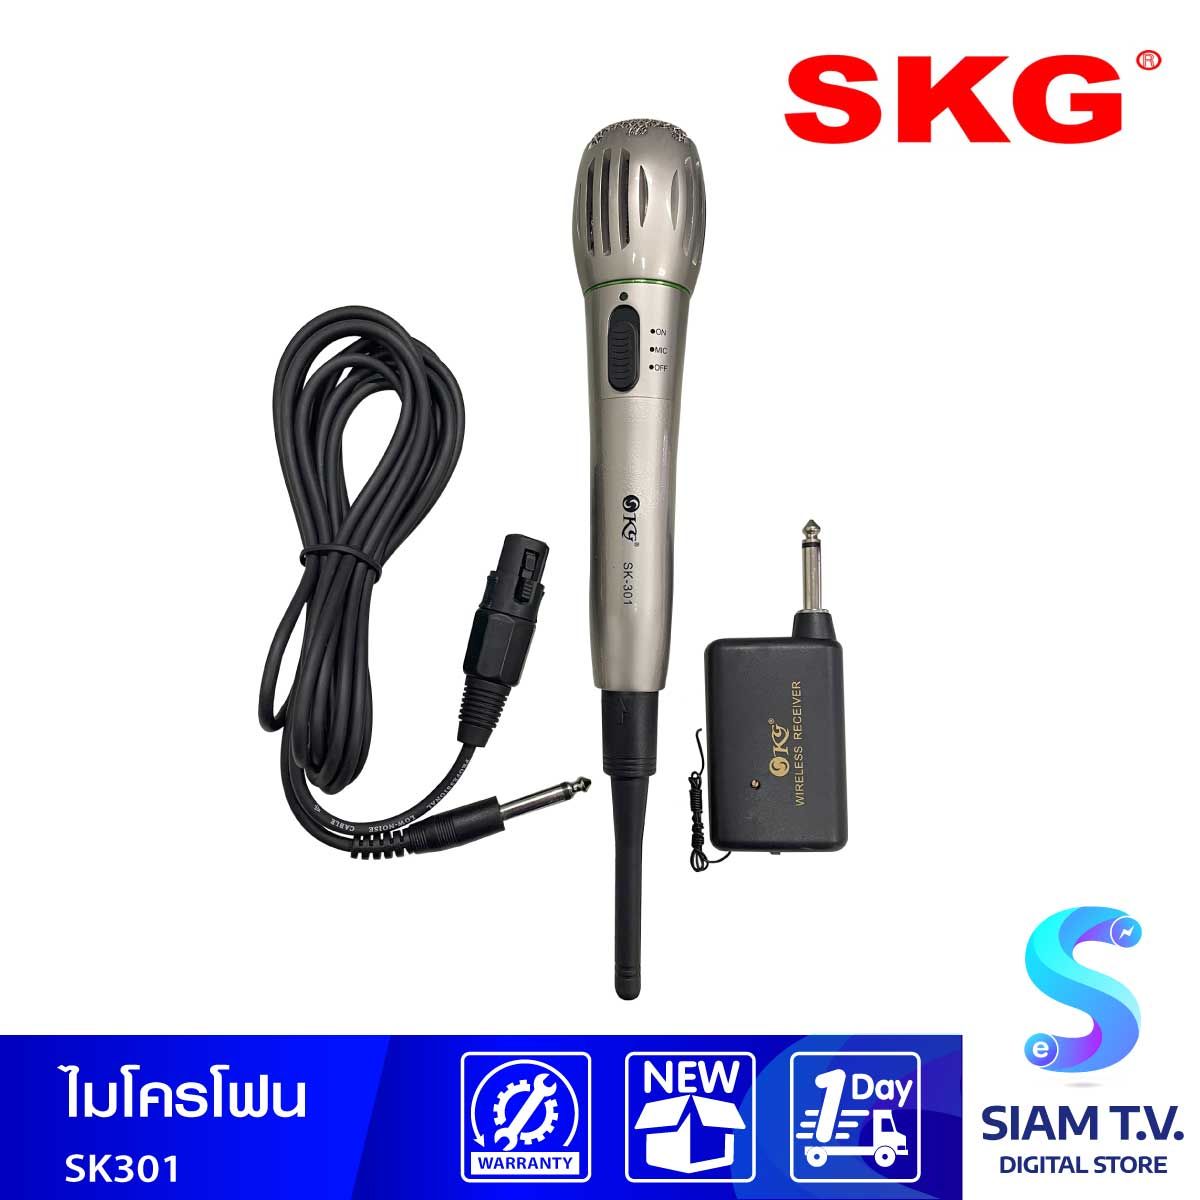 SKG ไมโครโฟน รุ่น SK-301 แบบ 2 ระบบ ไมล์สาย และ ไมล์แบบไร้สาย